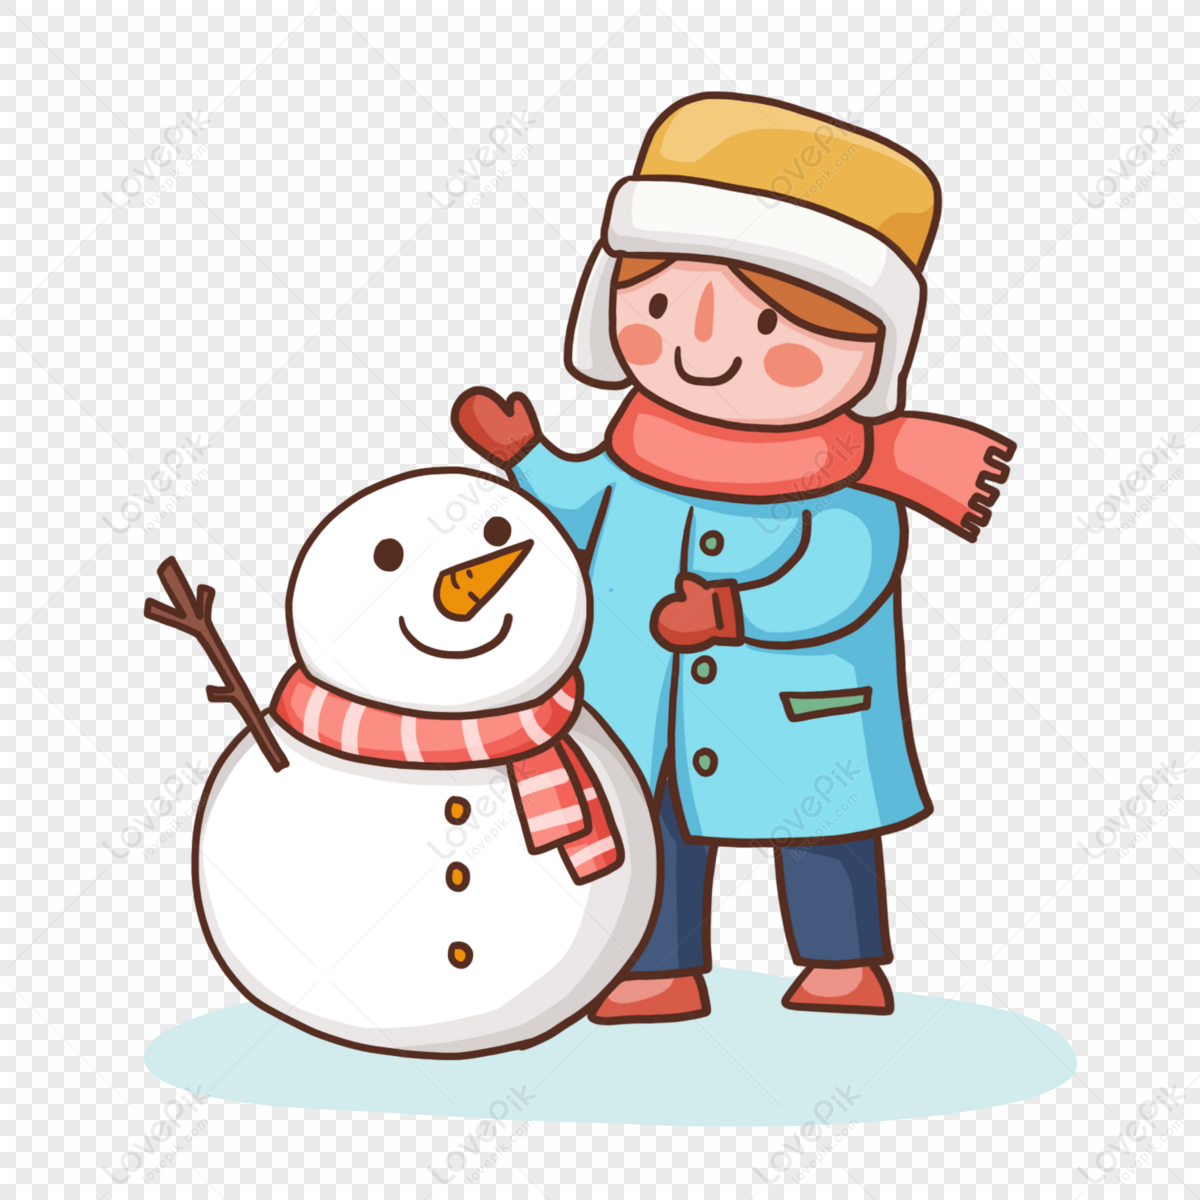 冬季服裝剪貼畫 不同風格卡通冬季服裝套裝 向量, 冬天的衣服, 剪貼畫, 卡通片向量圖案素材免費下載，PNG，EPS和AI素材下載 - Pngtree